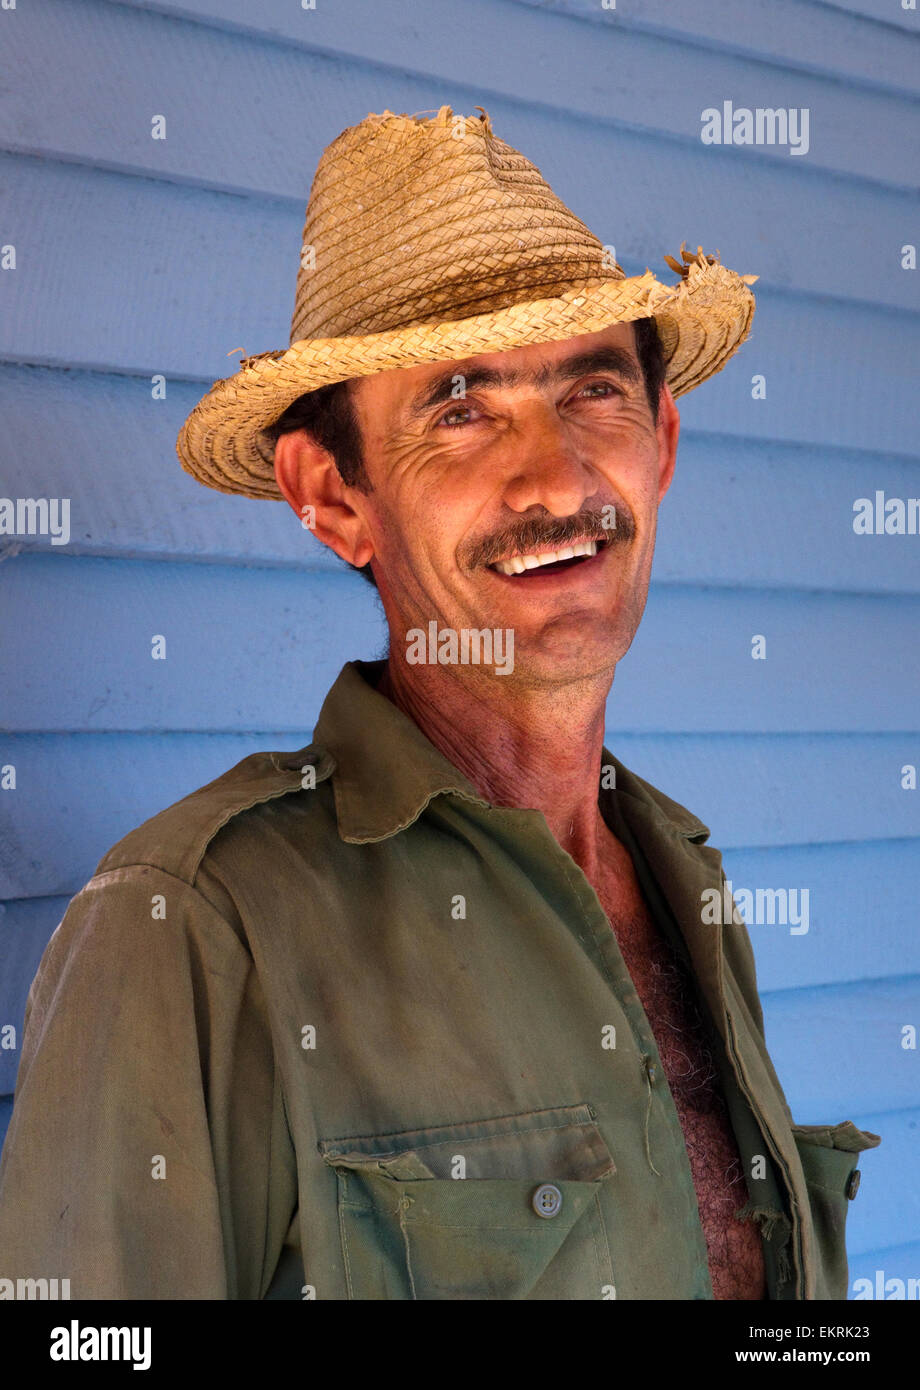 A tobacco farmer in Vinales,Cuba Stock Photo